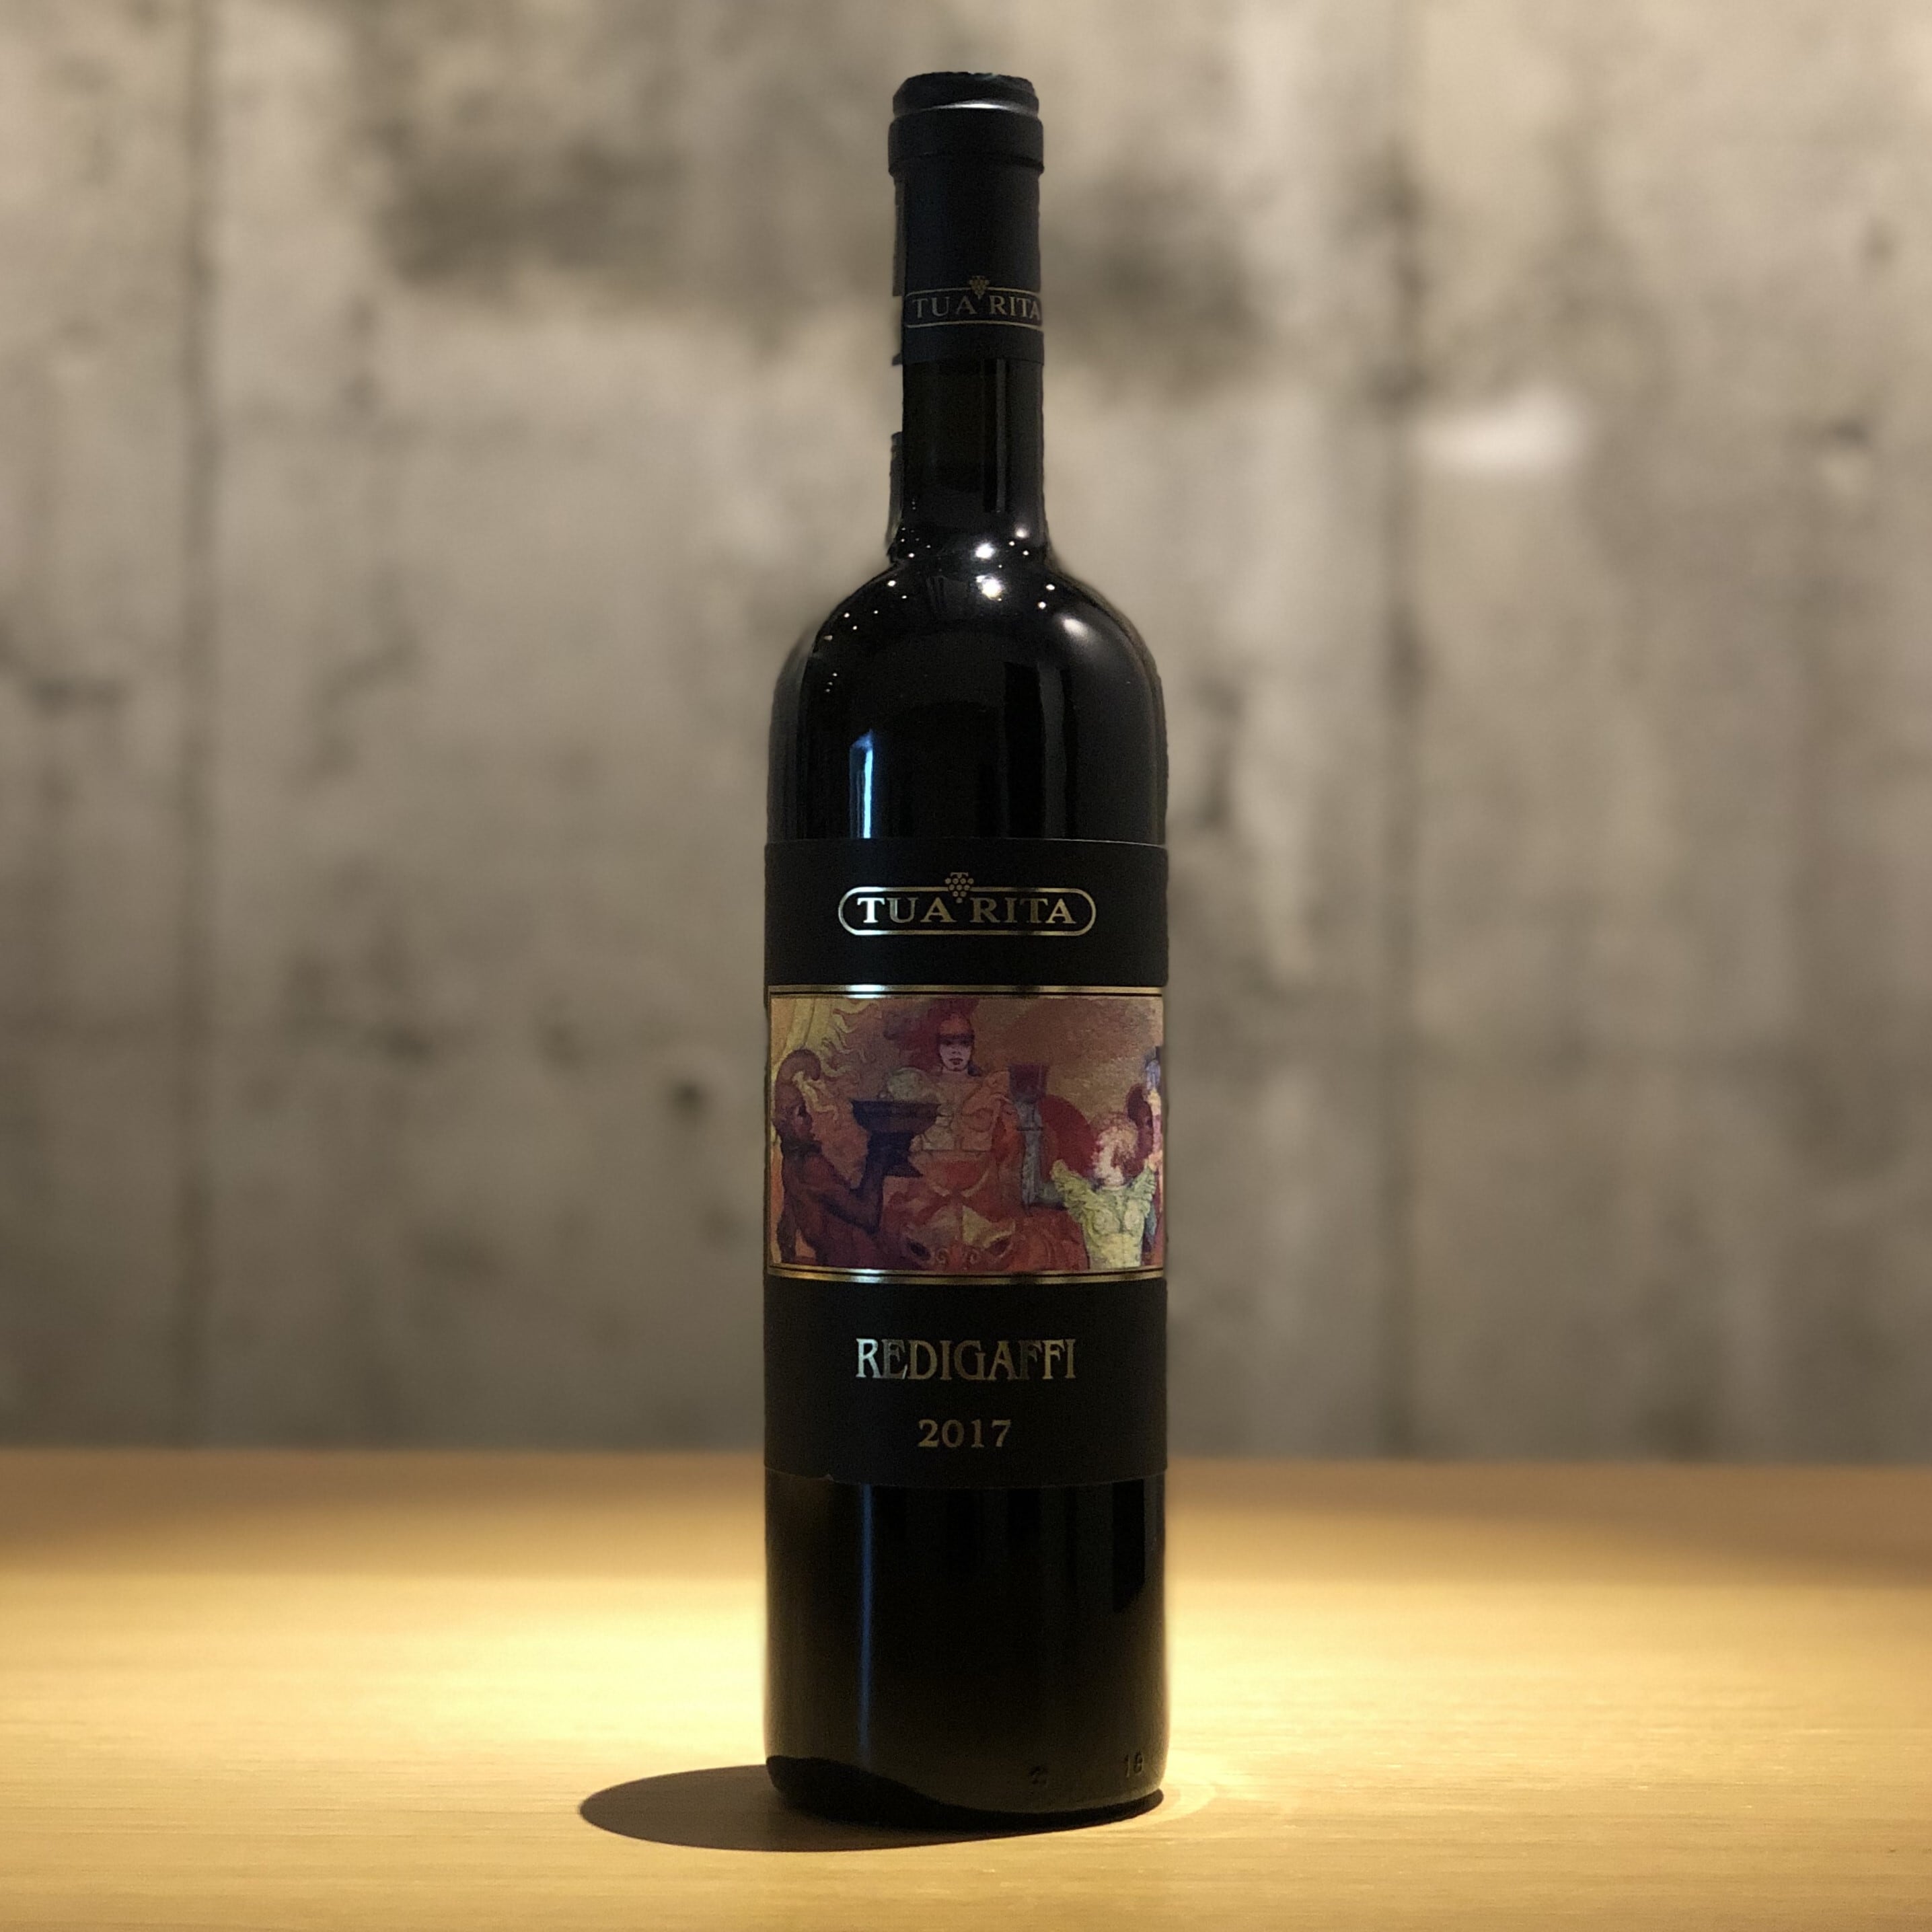 クール便] トゥア リータ レディガフィ 2020 赤ワイン メルロー イタリア 750ml 赤ワイン